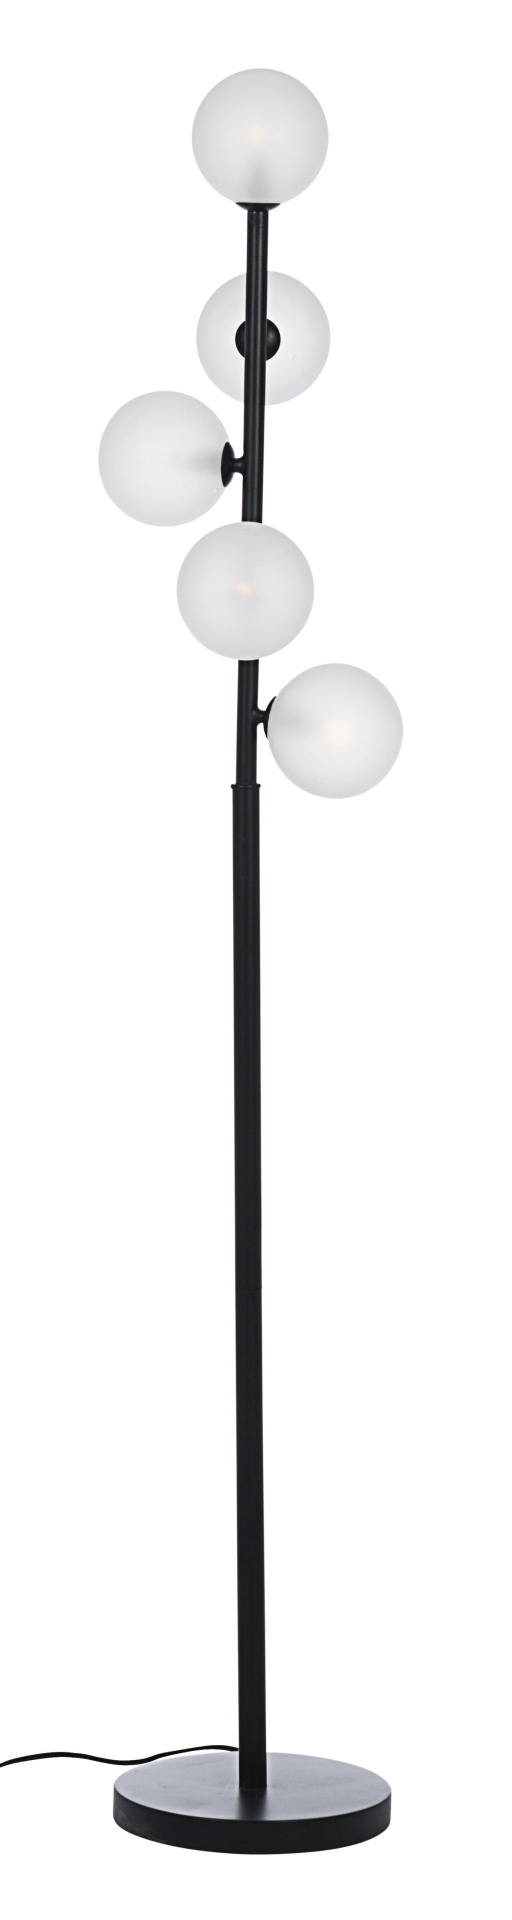 Die Stehlampe Balls überzeugt mit ihrem moderndem Design. Gefertigt wurde sie aus welches einen schwarzen Farbton besitzt. Die Lampengehäuse sind aus Milchglas- Die Lampe verfügt insgesamt über fünf Lichtquellen, mit G9 MAX 3W Glühbirnen. Die Kabellänge d